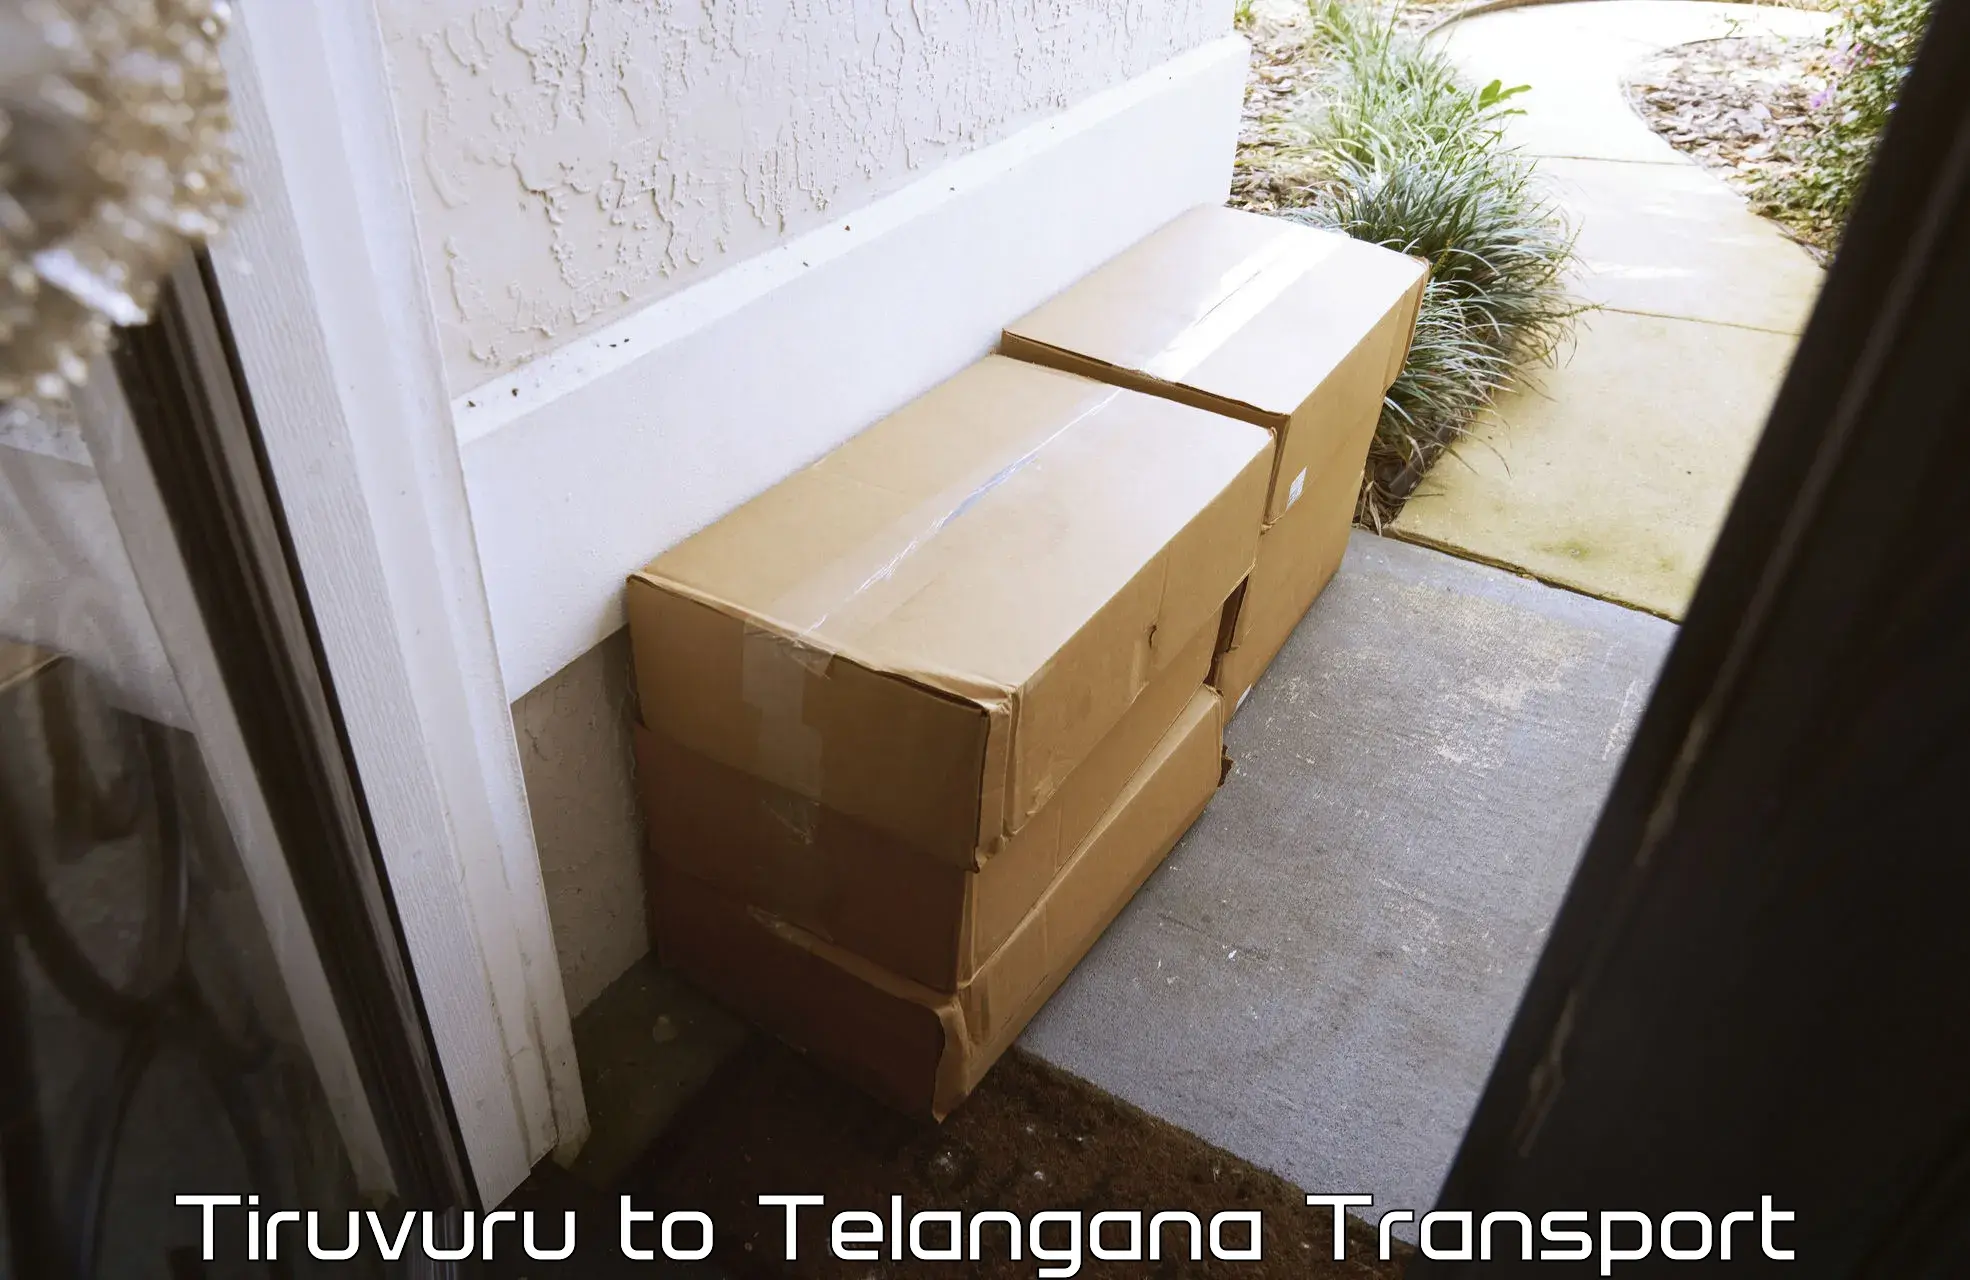 Furniture transport service Tiruvuru to Patancheru